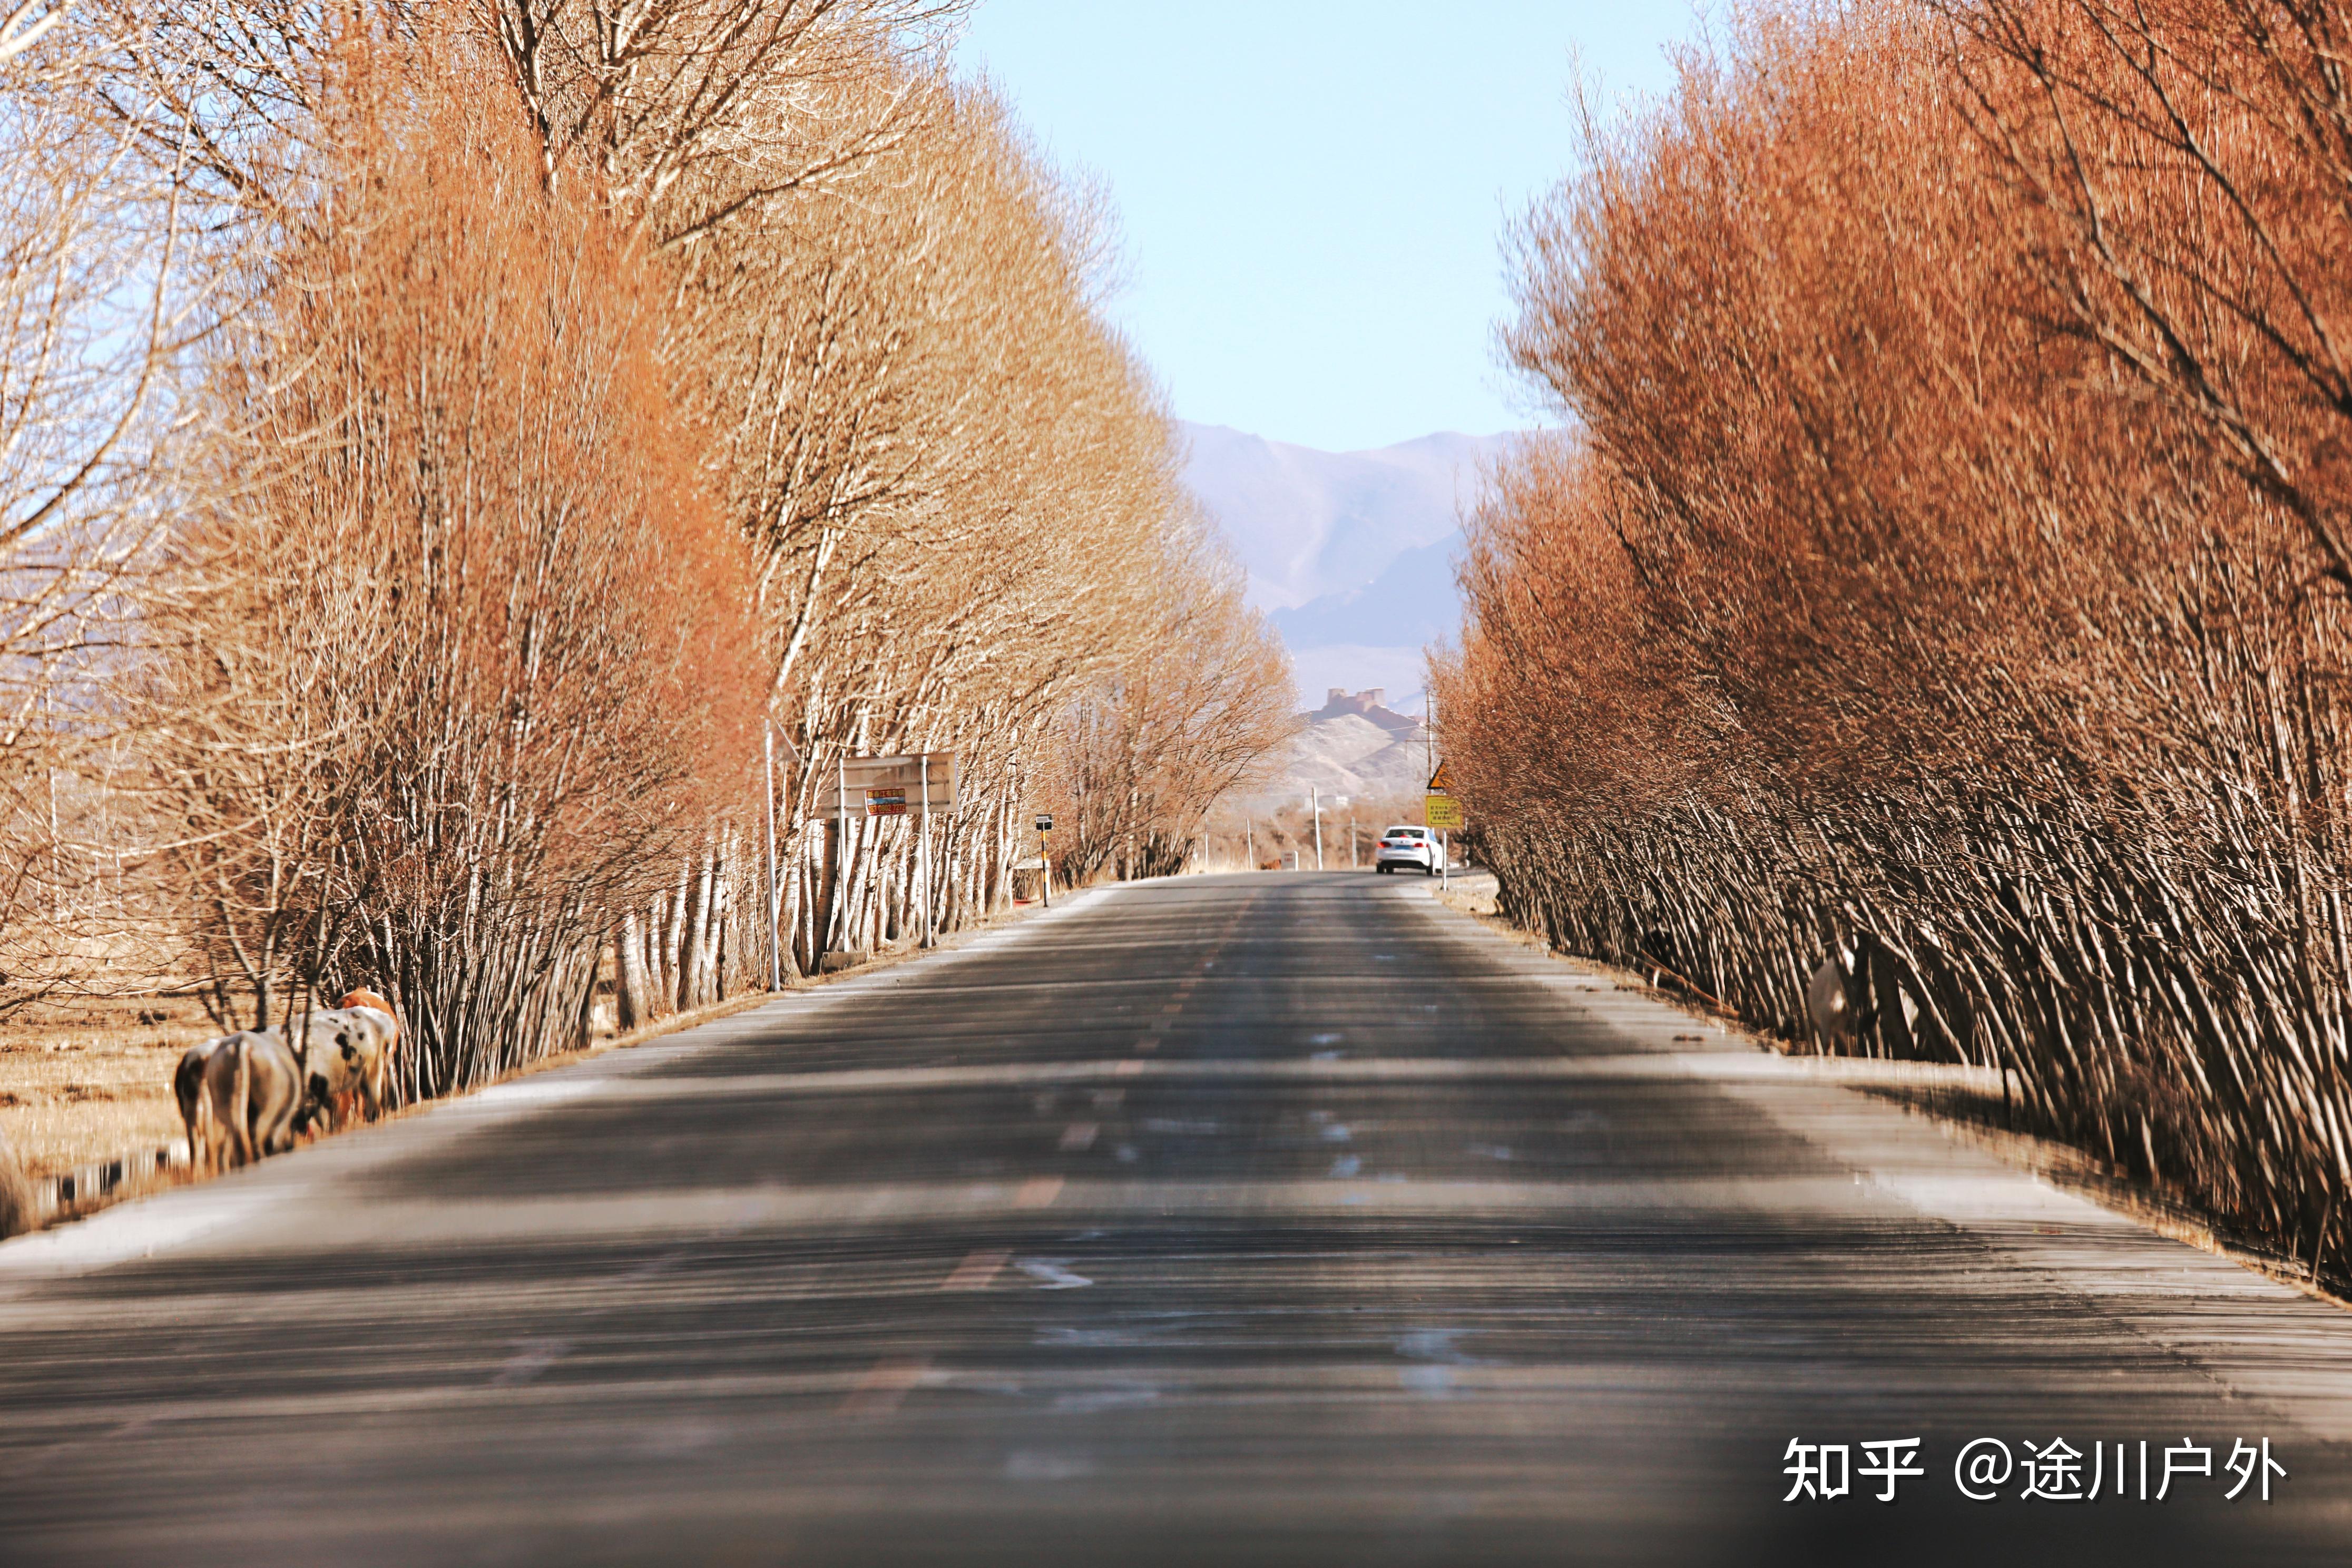 西藏3条经典自驾路线,公路美极了,司机都喜欢,真实路况如何?